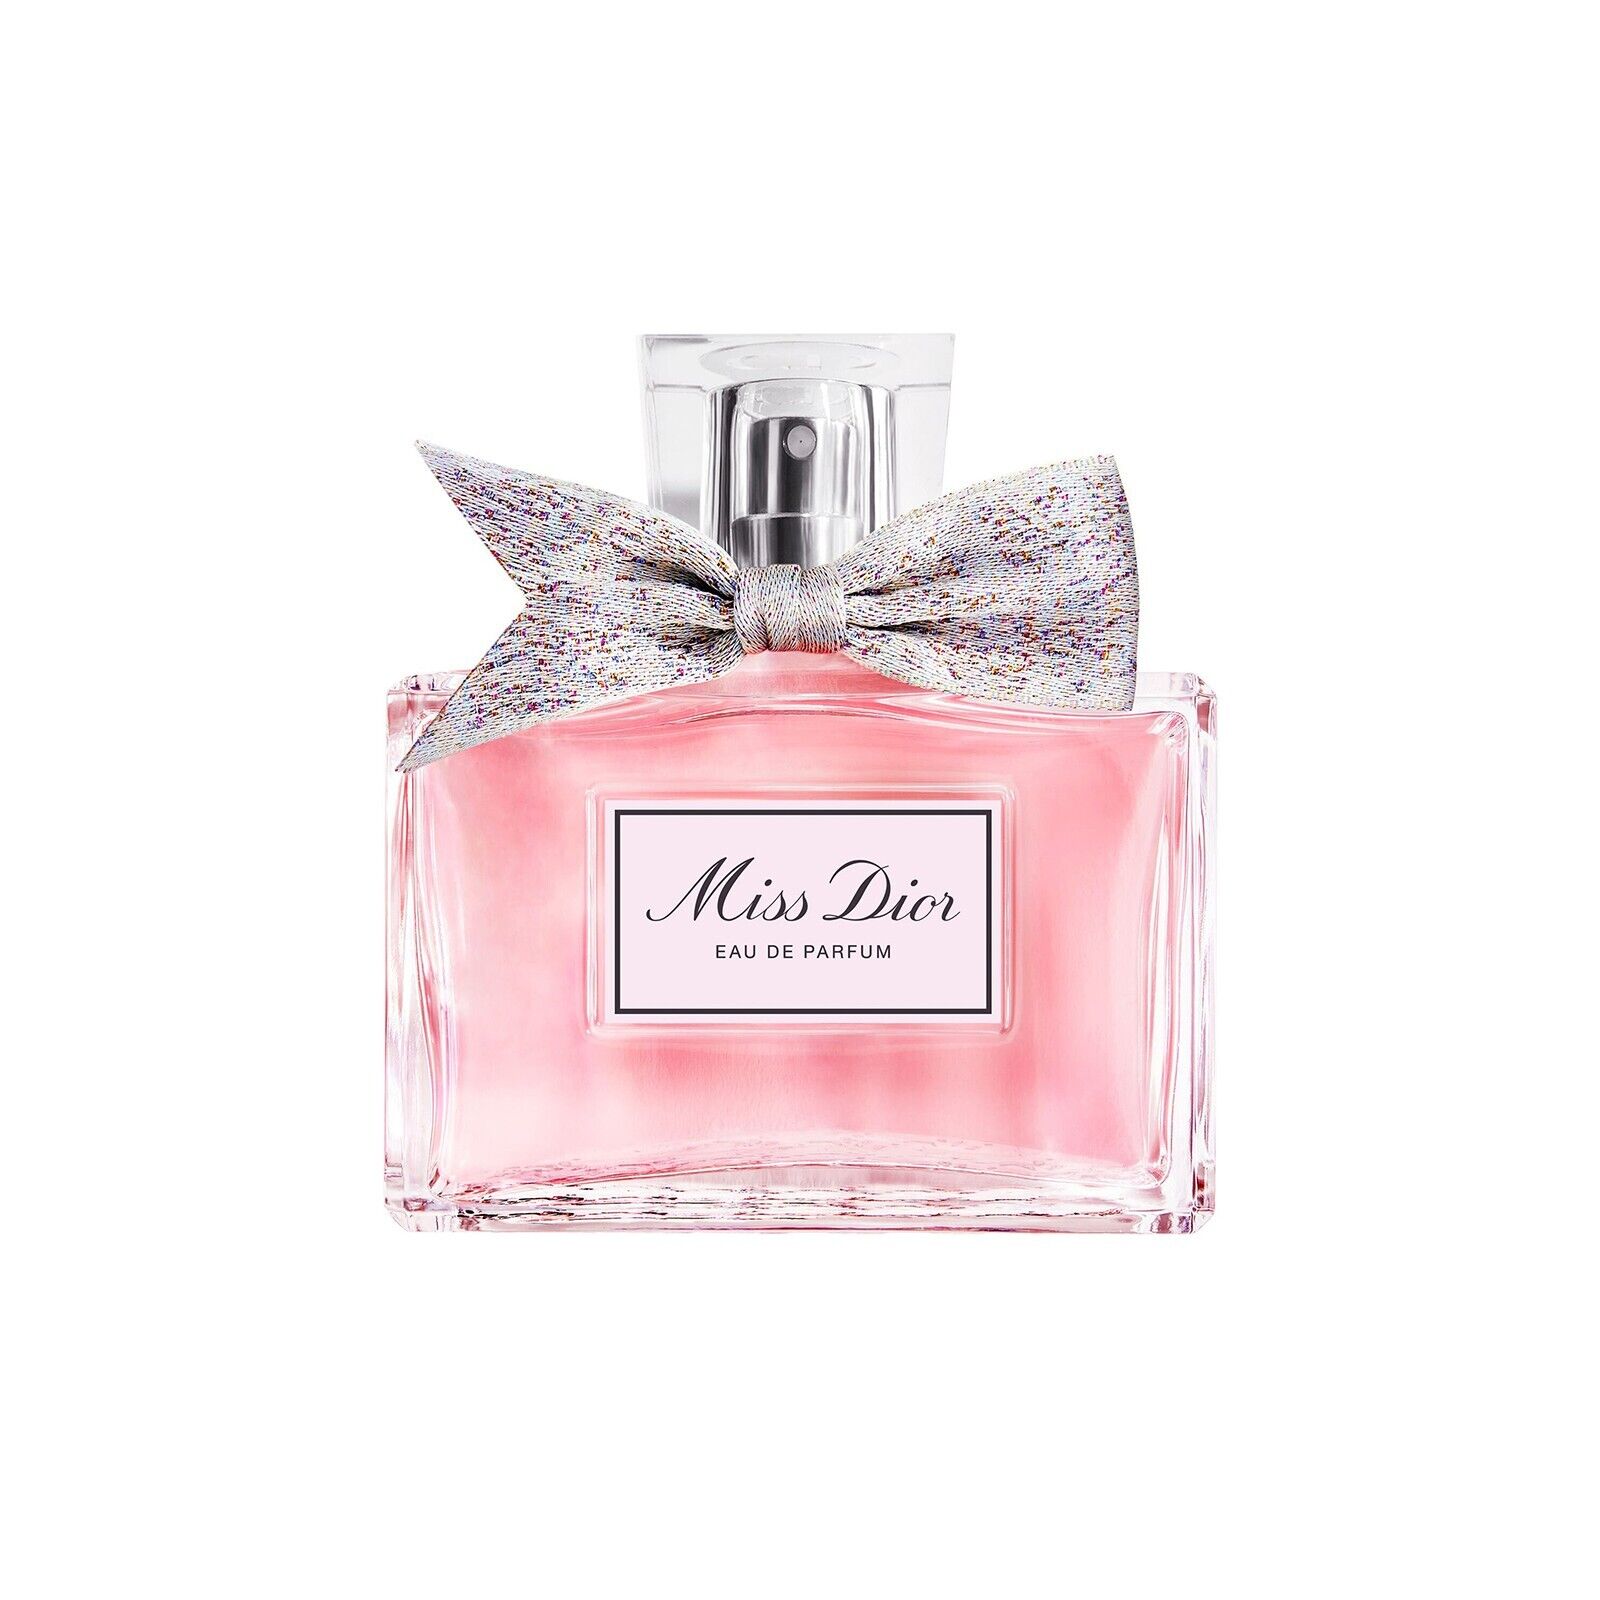 Miss Dior Eau de Parfum EDP Perfume Spray For Women 3.4 OZ New In Box